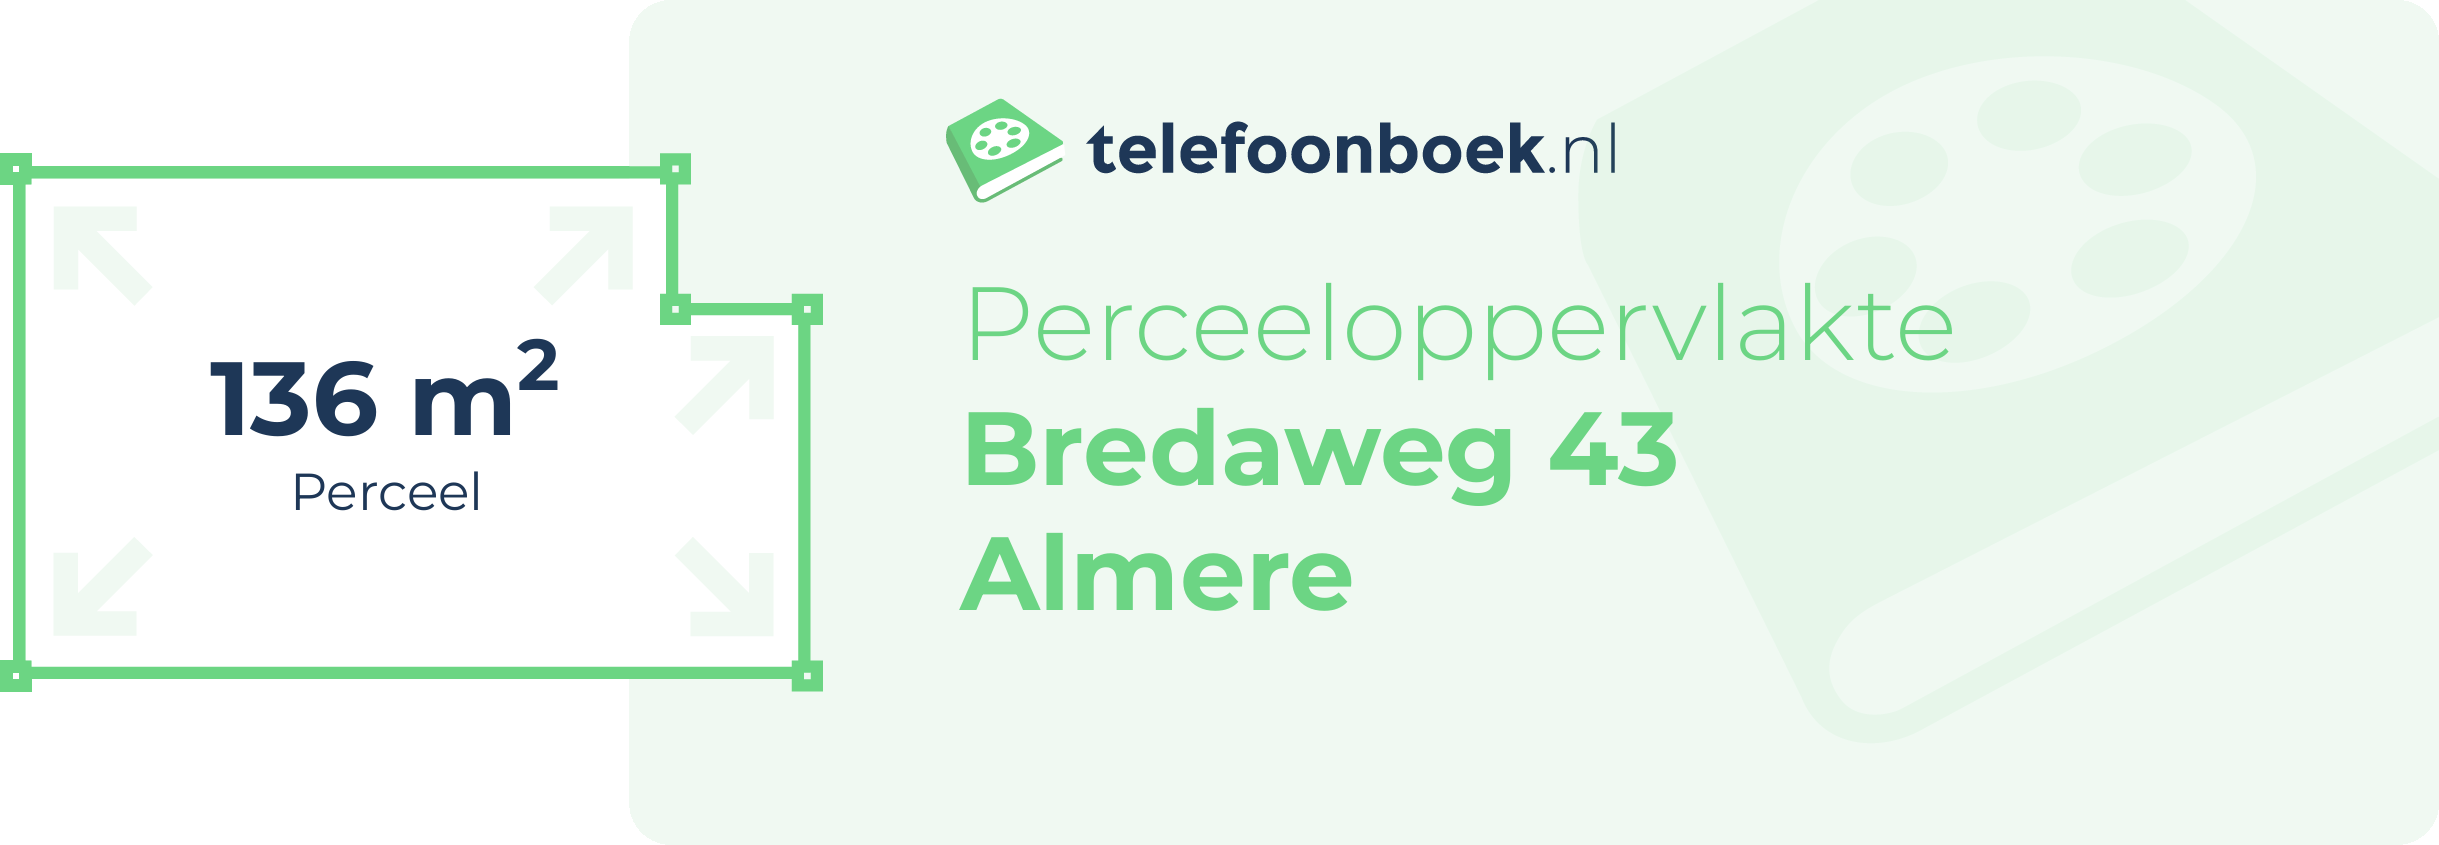 Perceeloppervlakte Bredaweg 43 Almere